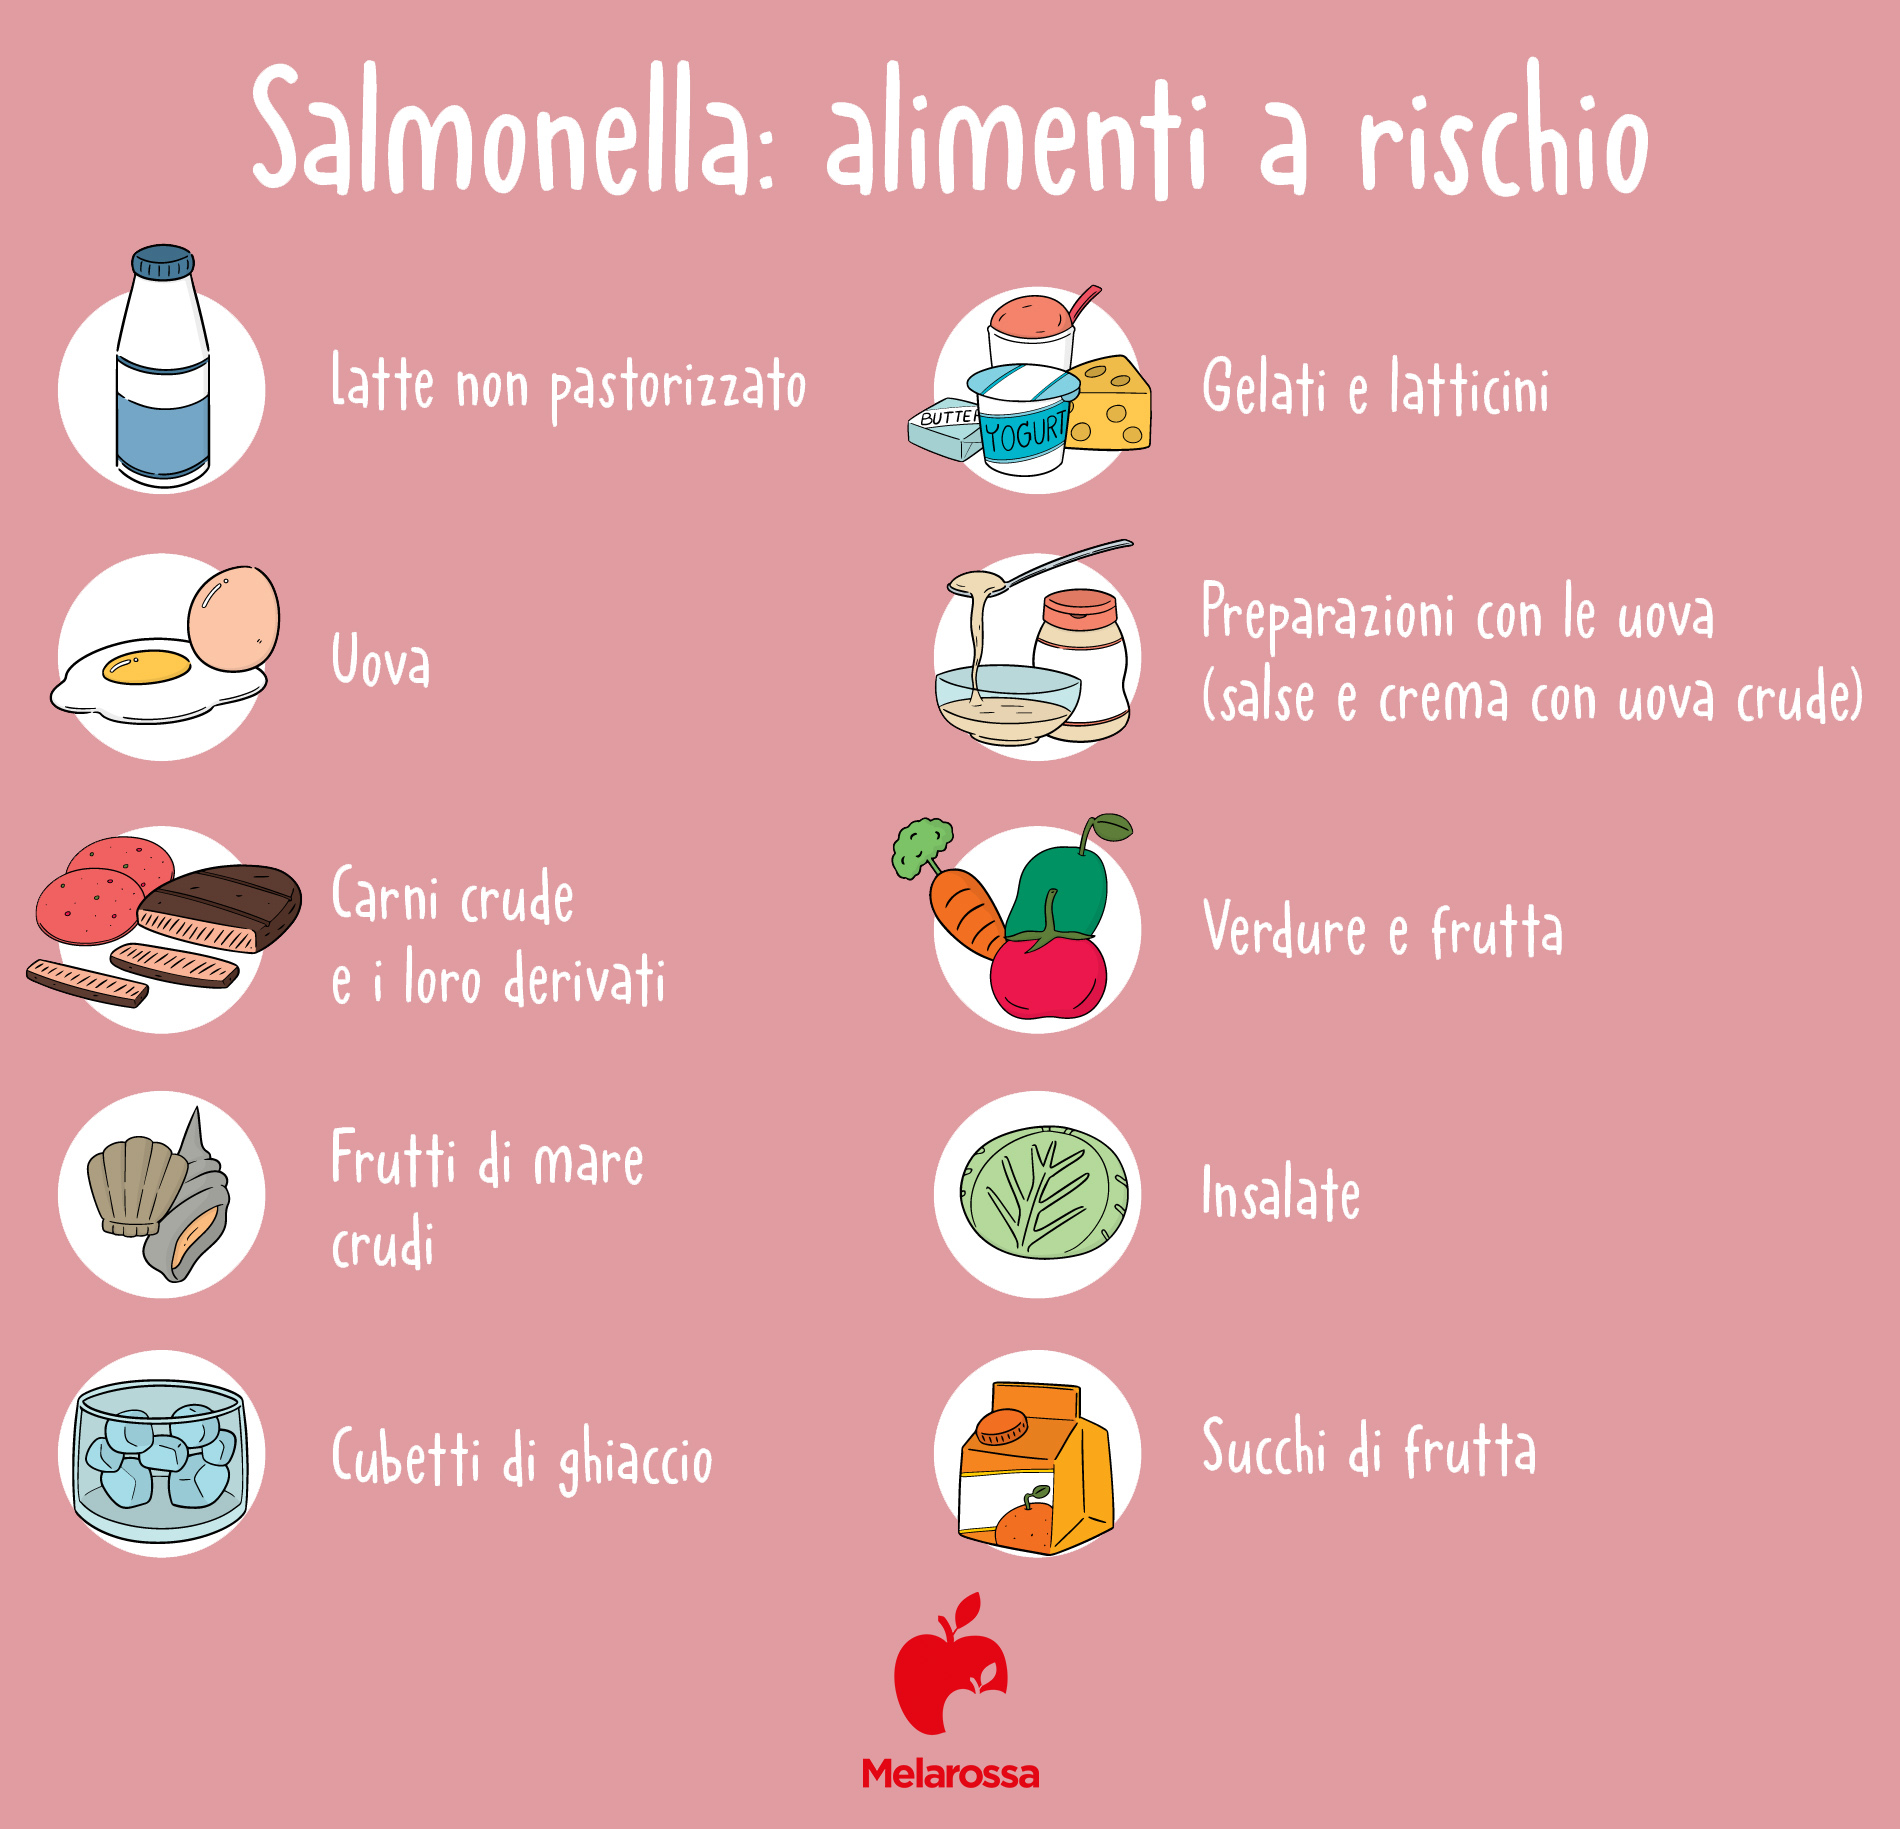 salmonella: alimenti a rischio 